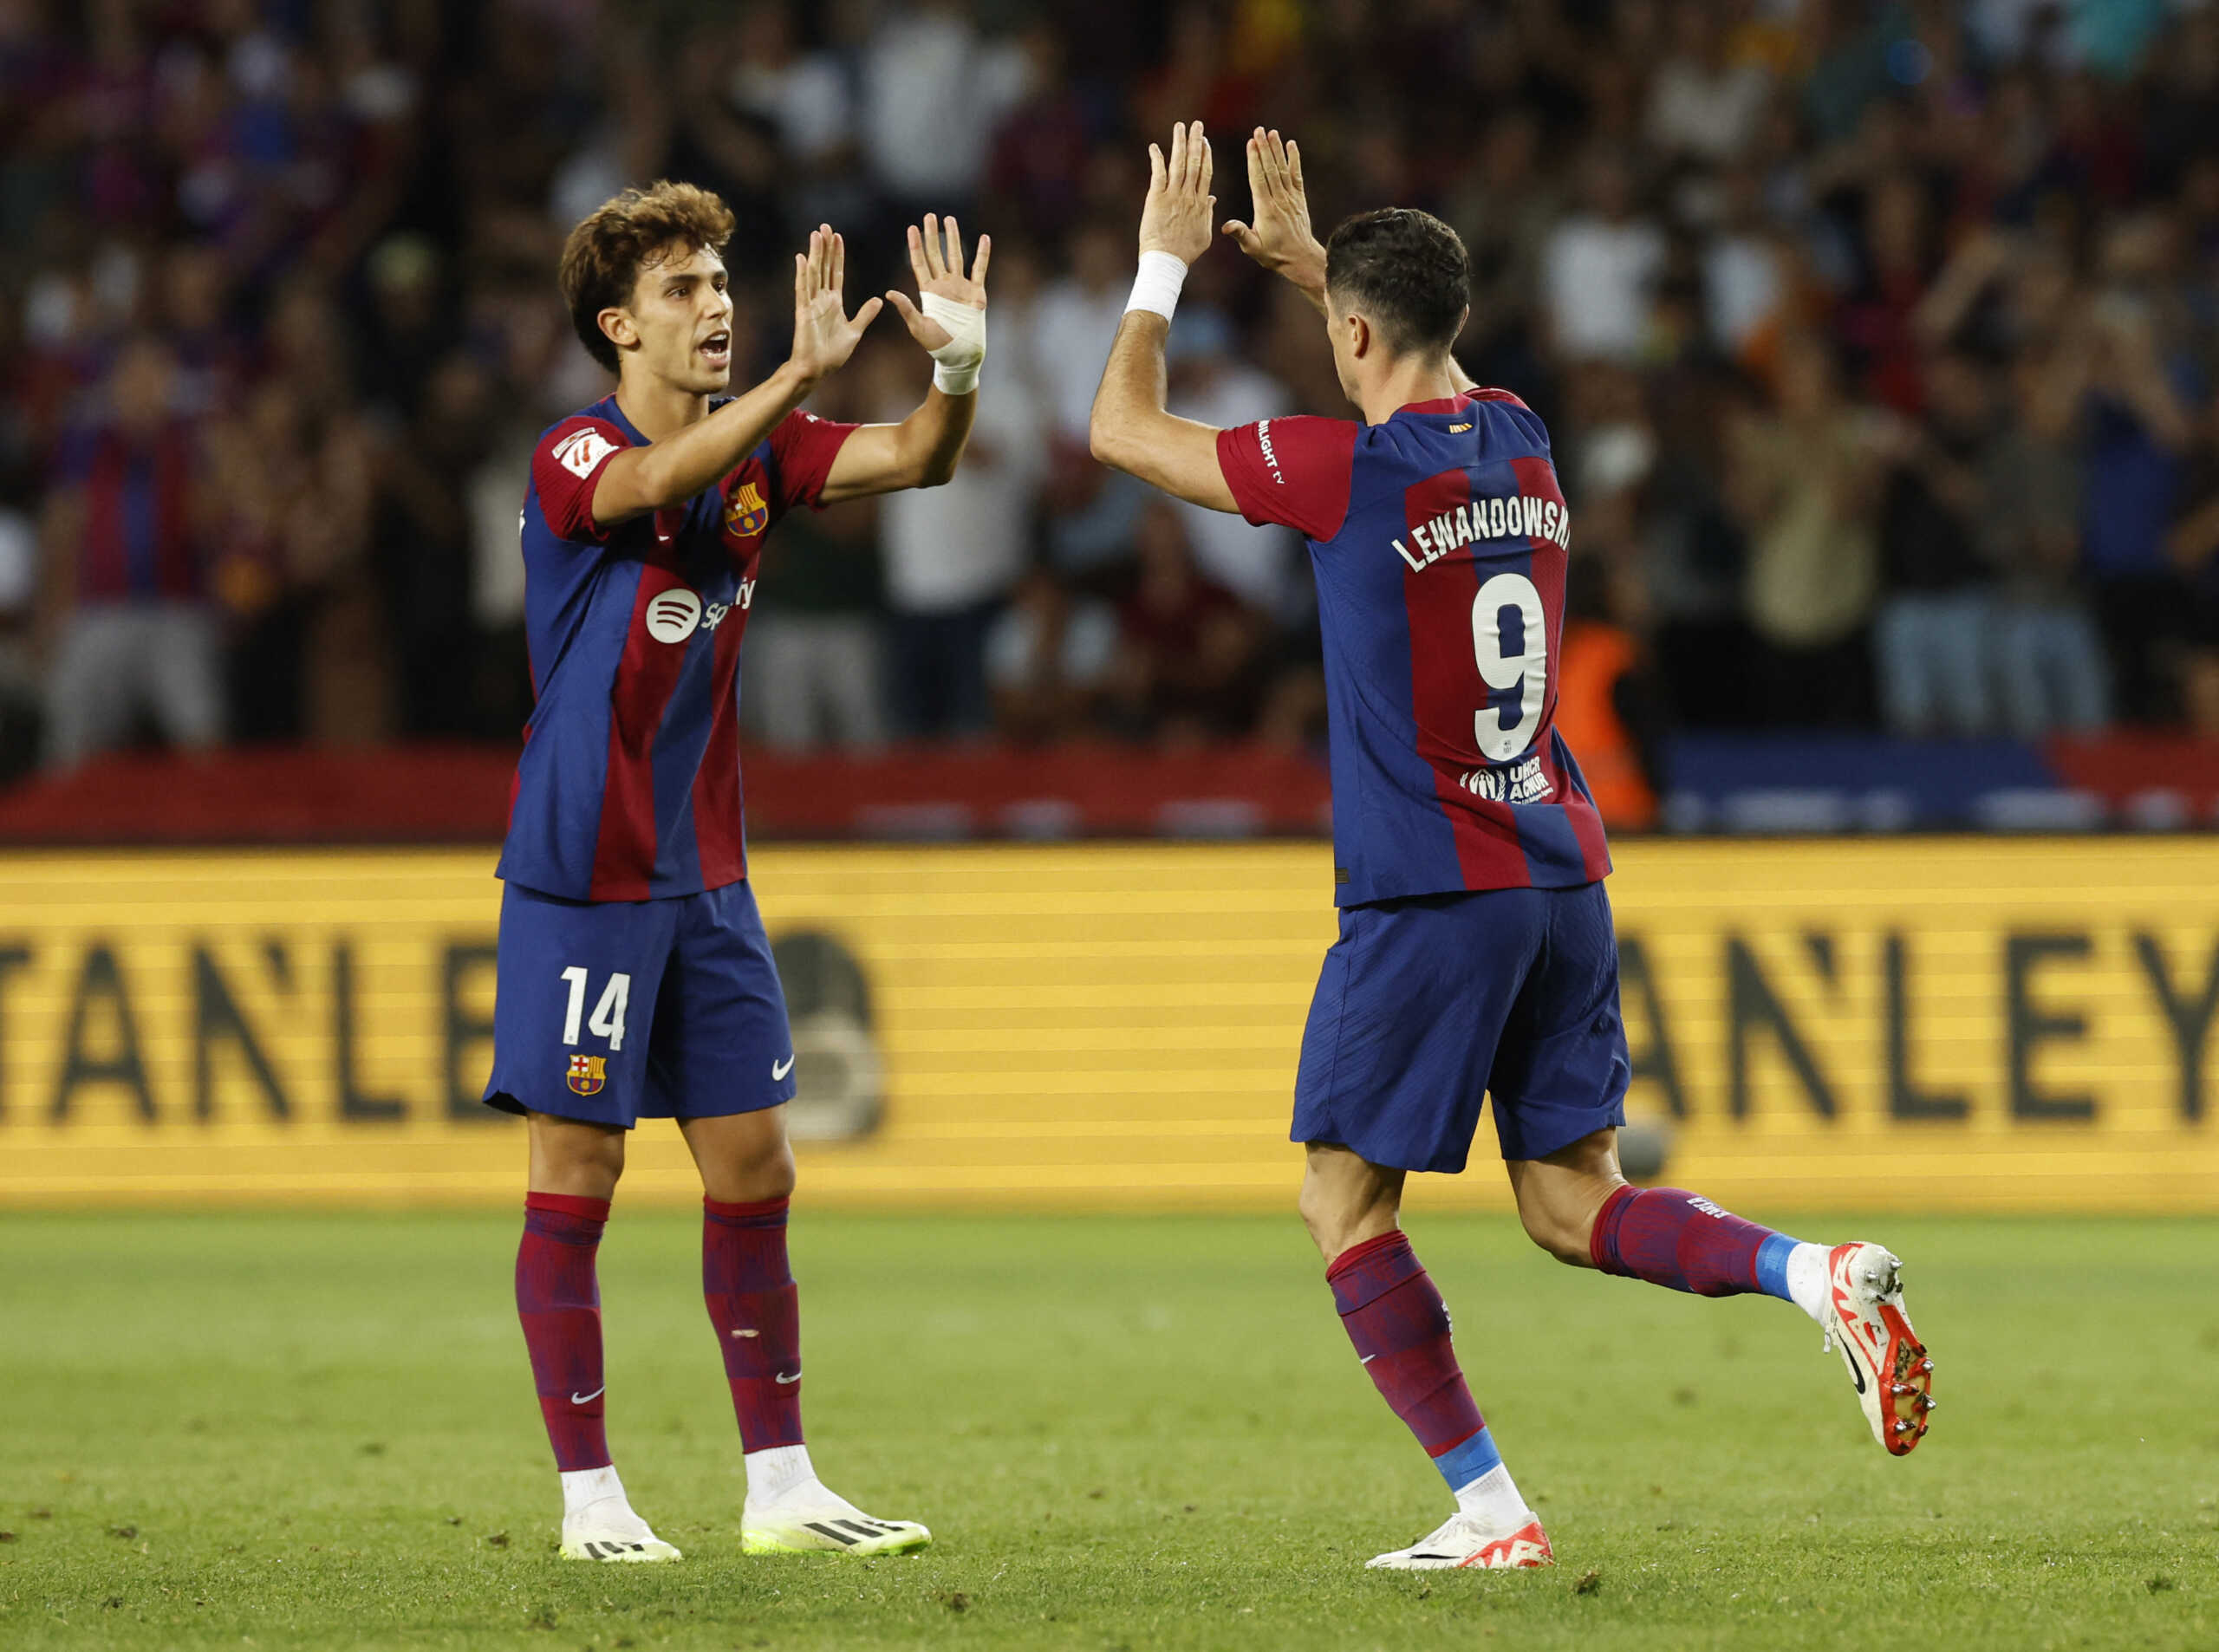 Μπαρτσελόνα – Θέλτα 3-2: Επική ανατροπή από 0-2 για τους Καταλανούς, πρώτο γκολ του Δουβίκα στην Ισπανία